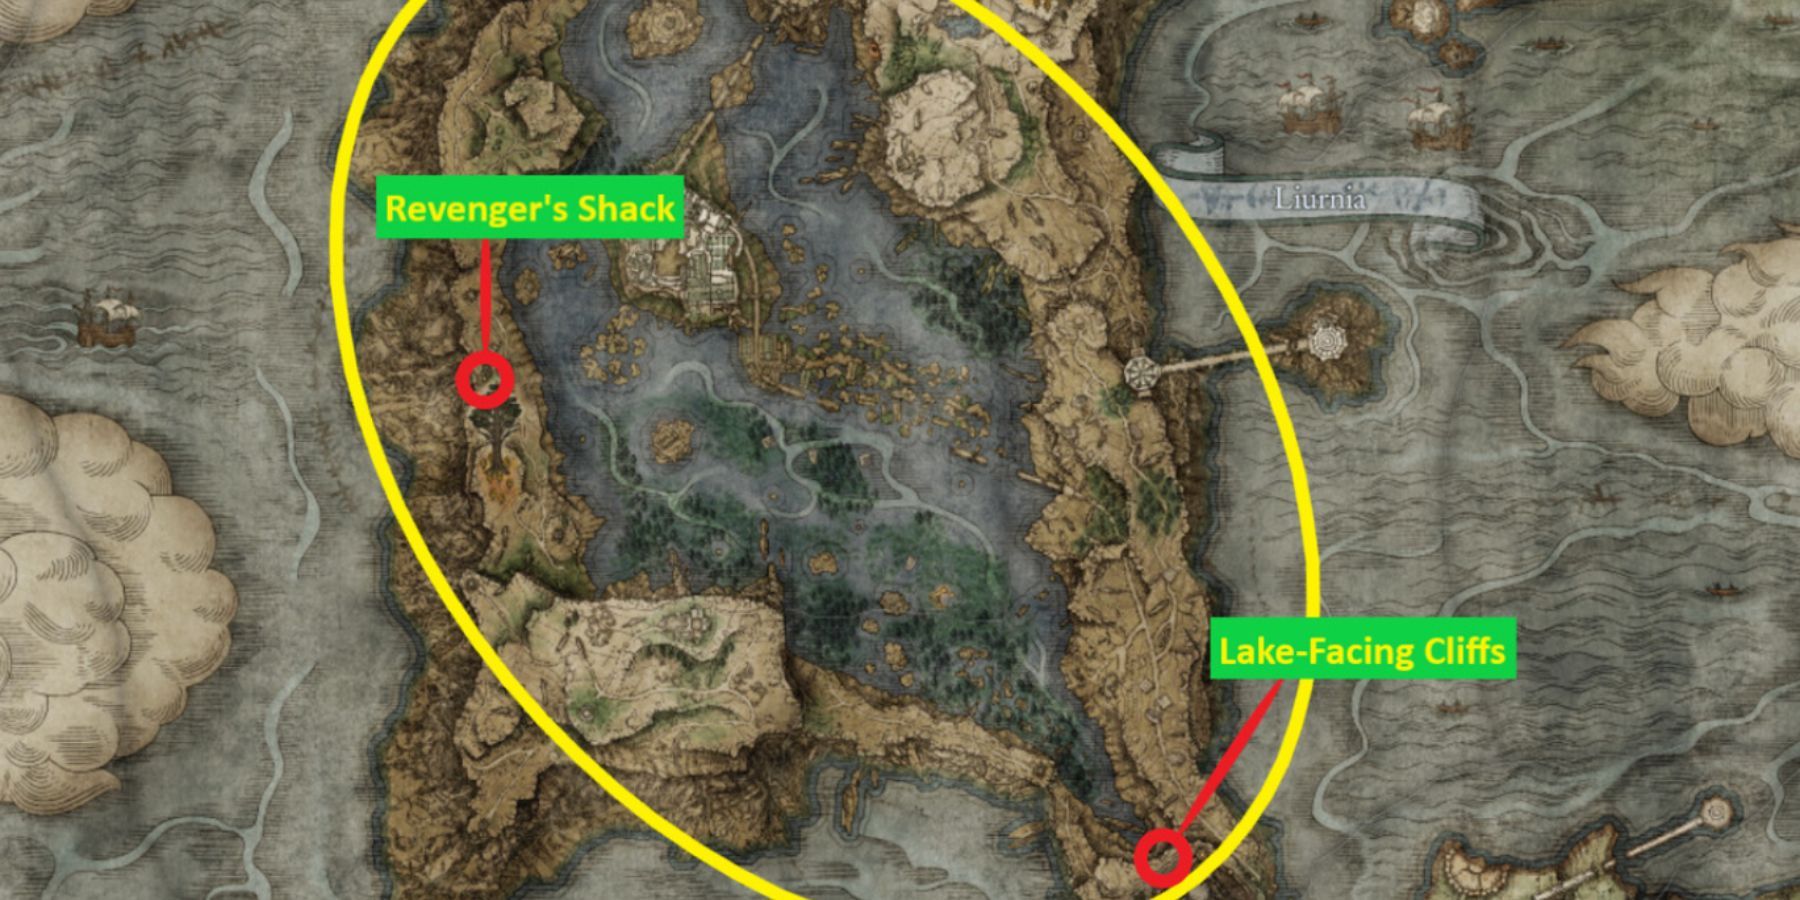 Lake-Facing Cliffs and Revenger's Shack in Elden Ring